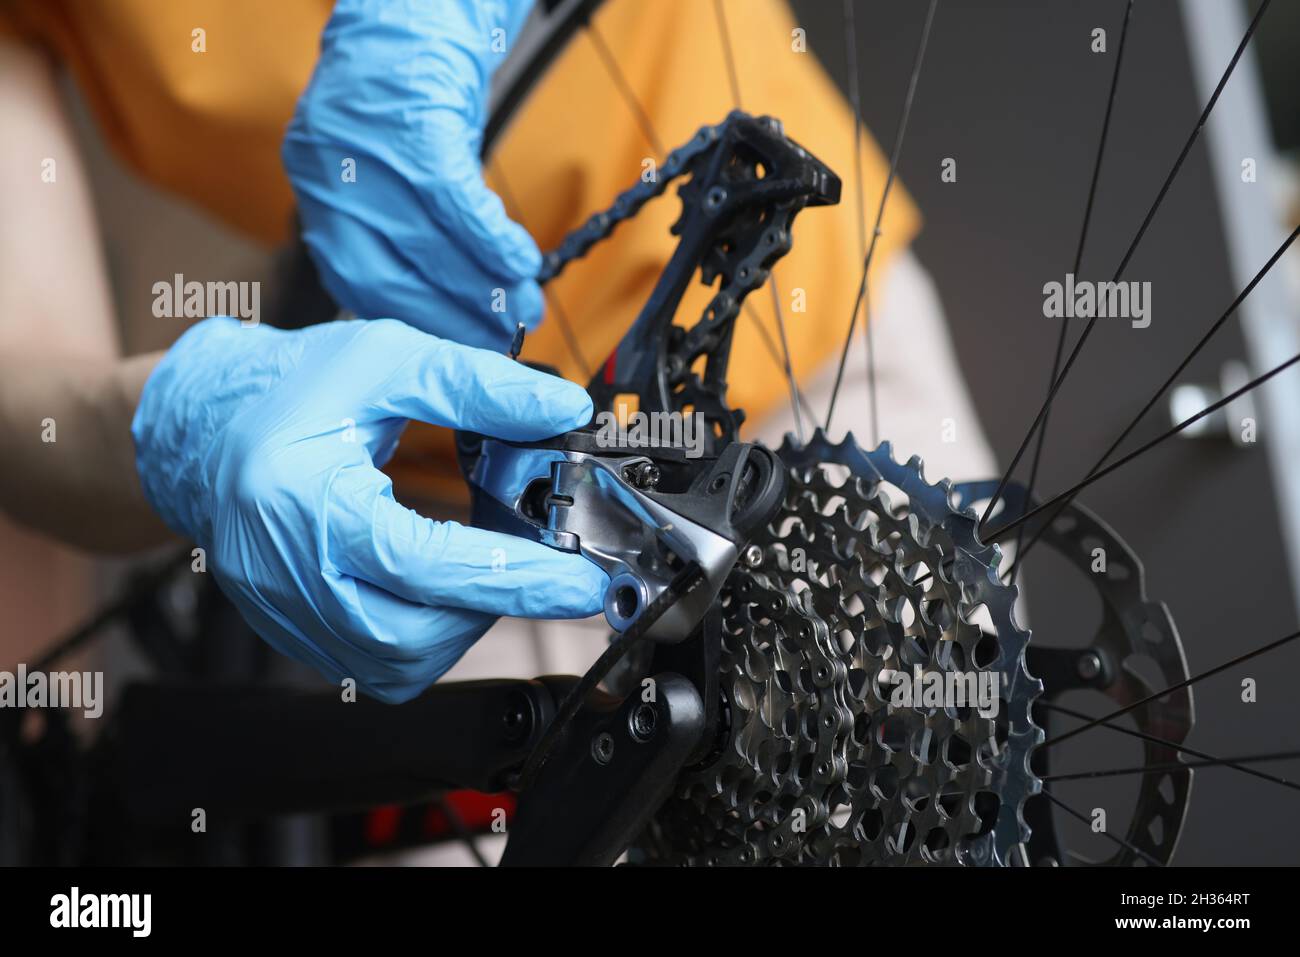 Handyman in Gummihandschuhen zur Befestigung von Bremsen von Fahrrad Nahaufnahme. Reparatur und Wartung von Fahrrädern Konzept Stockfoto